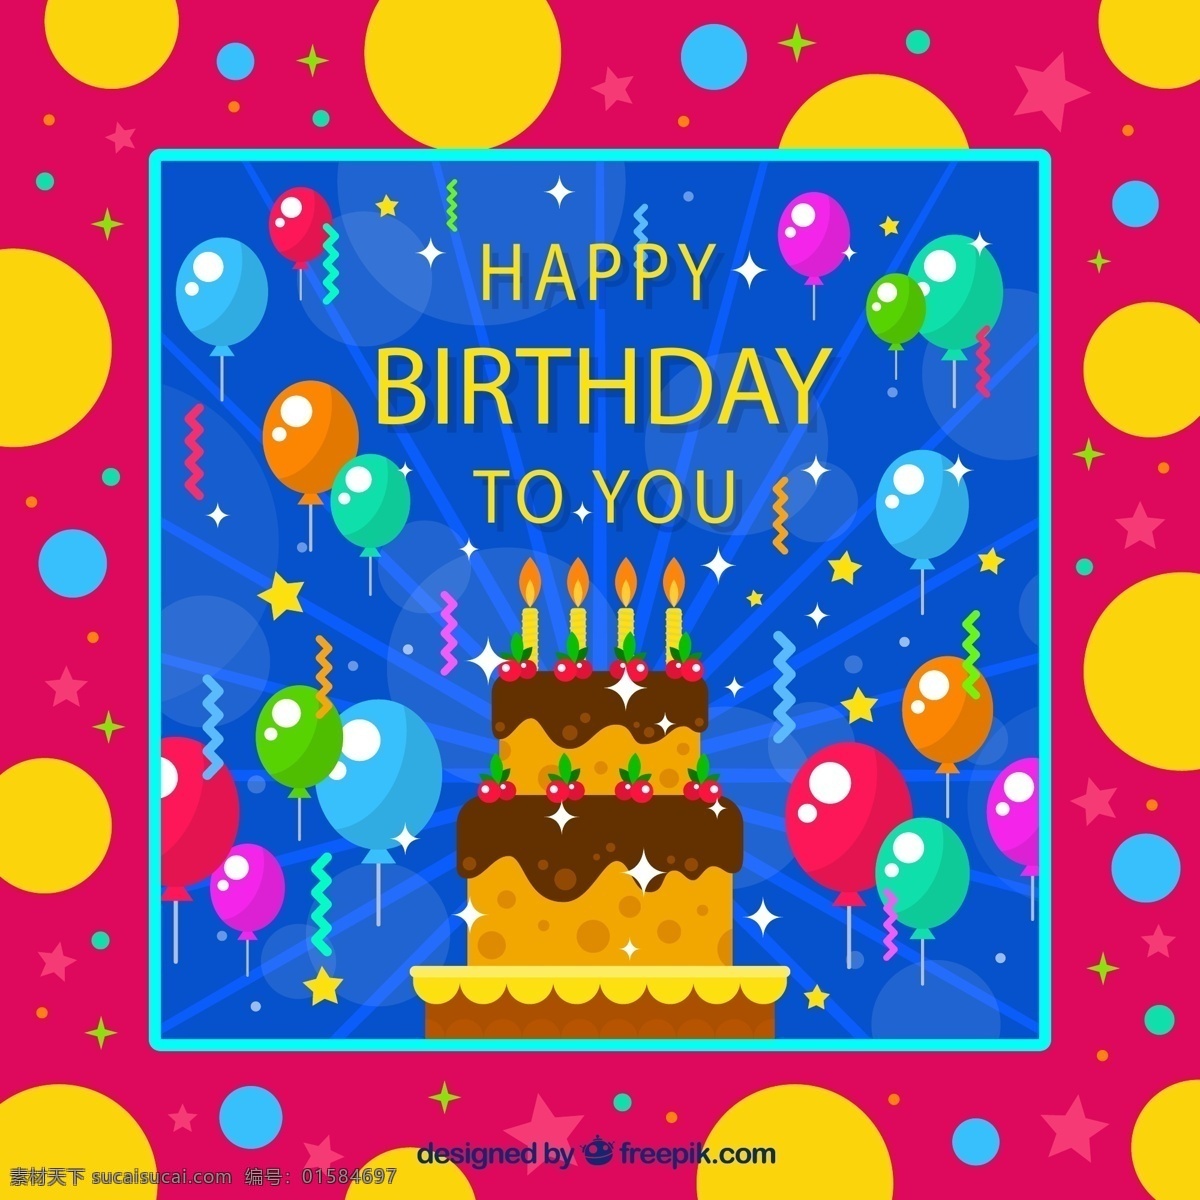 生日 快乐 祝福卡 气球 彩色纸屑 生日蛋糕 星星 生日快乐 矢量 高清图片